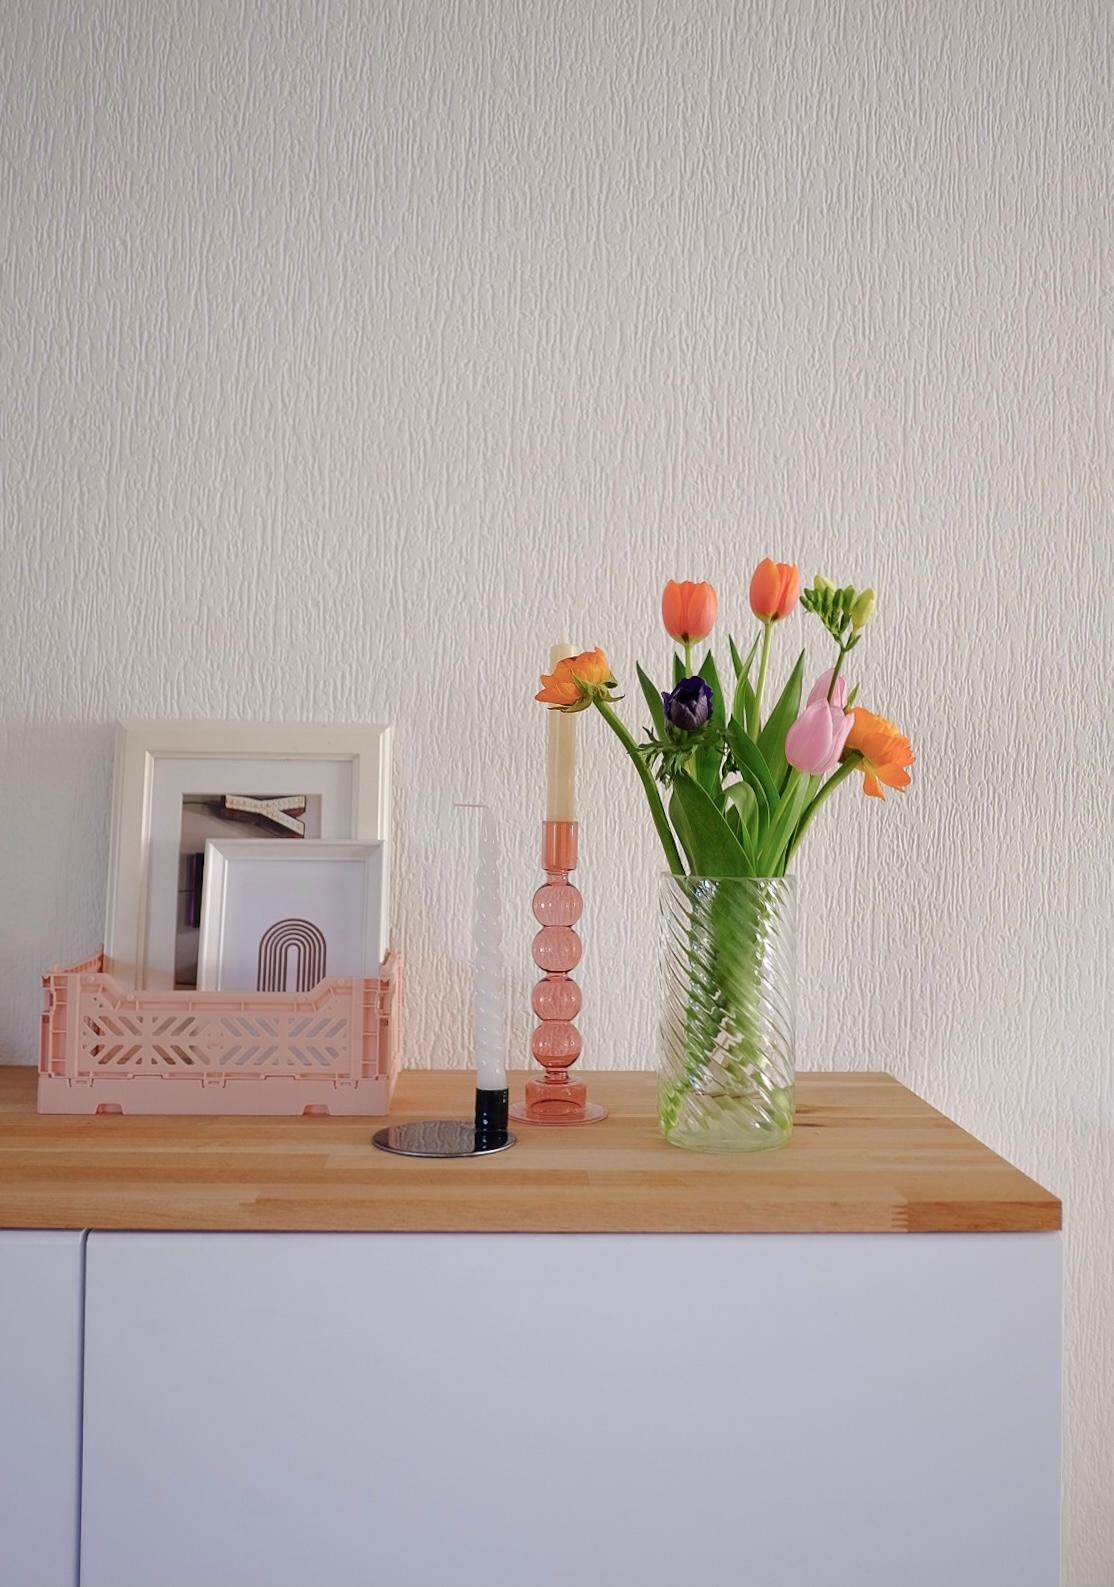 Tons of Colors. #flowers #flowerlove #freshflowerfriday #blumenliebe #livingroom #wohnzimmer #wohnzimmerinspo